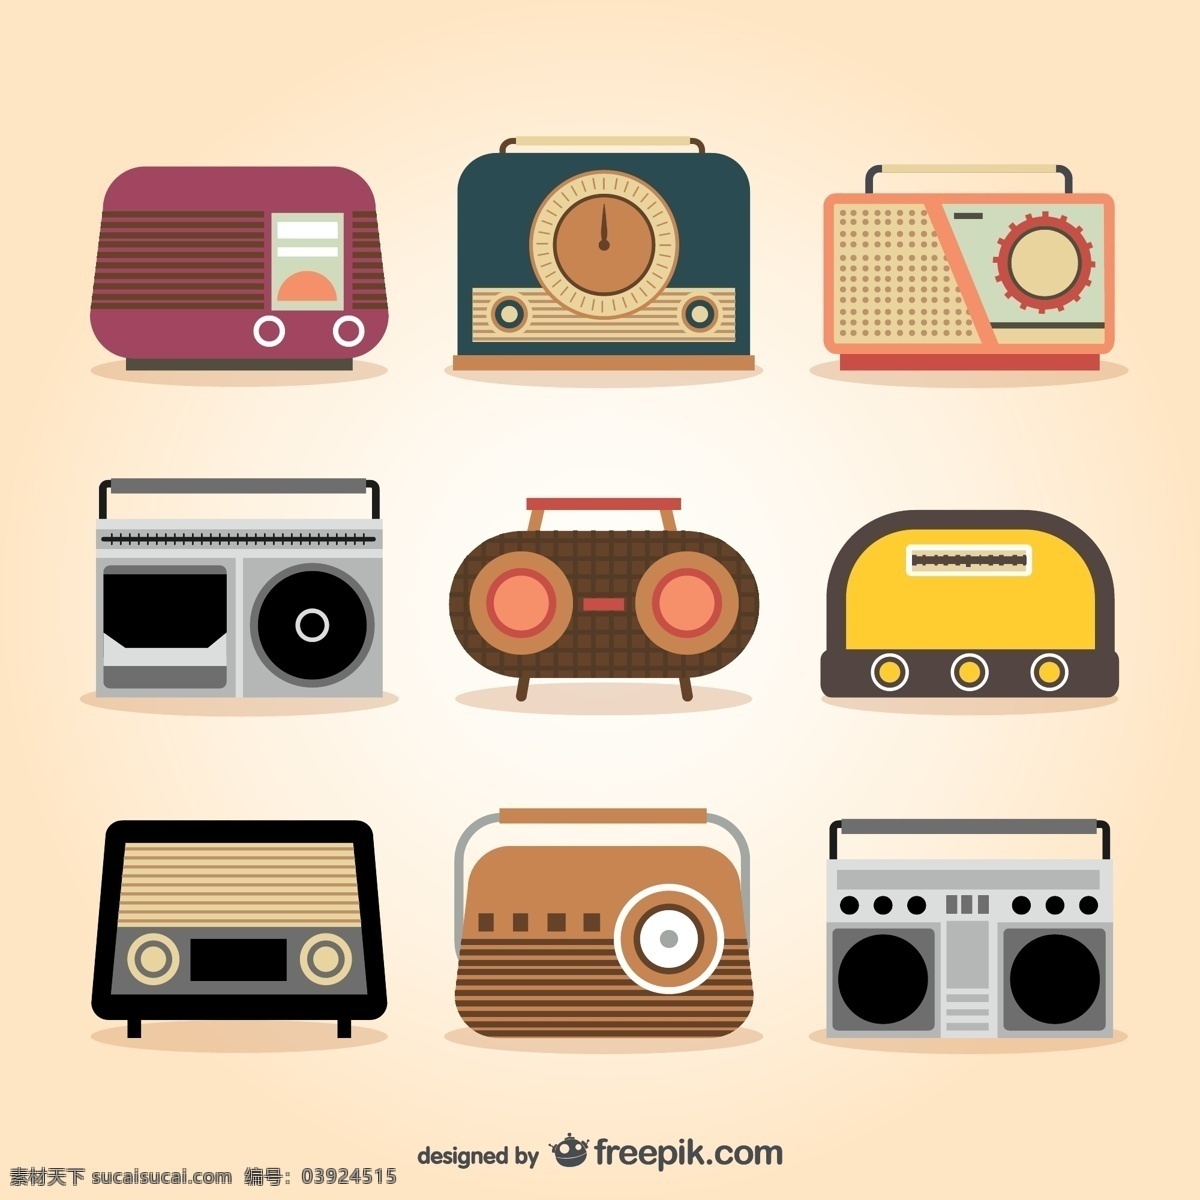 复古 收音机 电波 台式收音机 老式收音机 矢量图 格式 矢量 高清图片